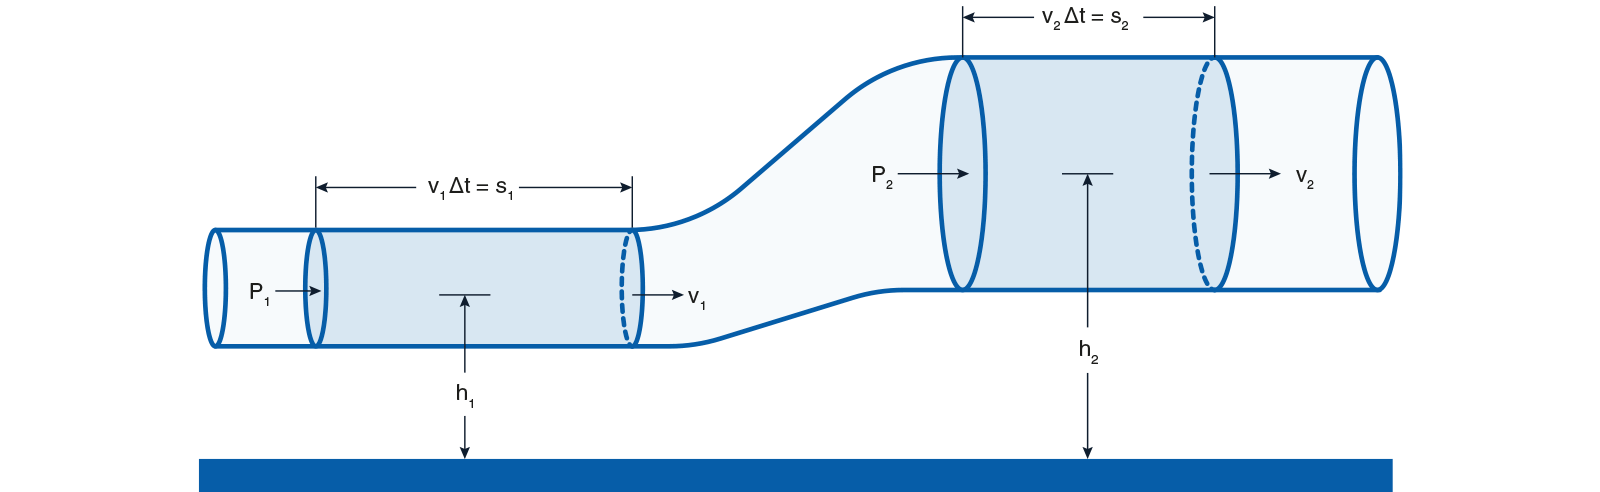 venturis tüp akış ölçer bernoulli diyagramının prensibi nedir